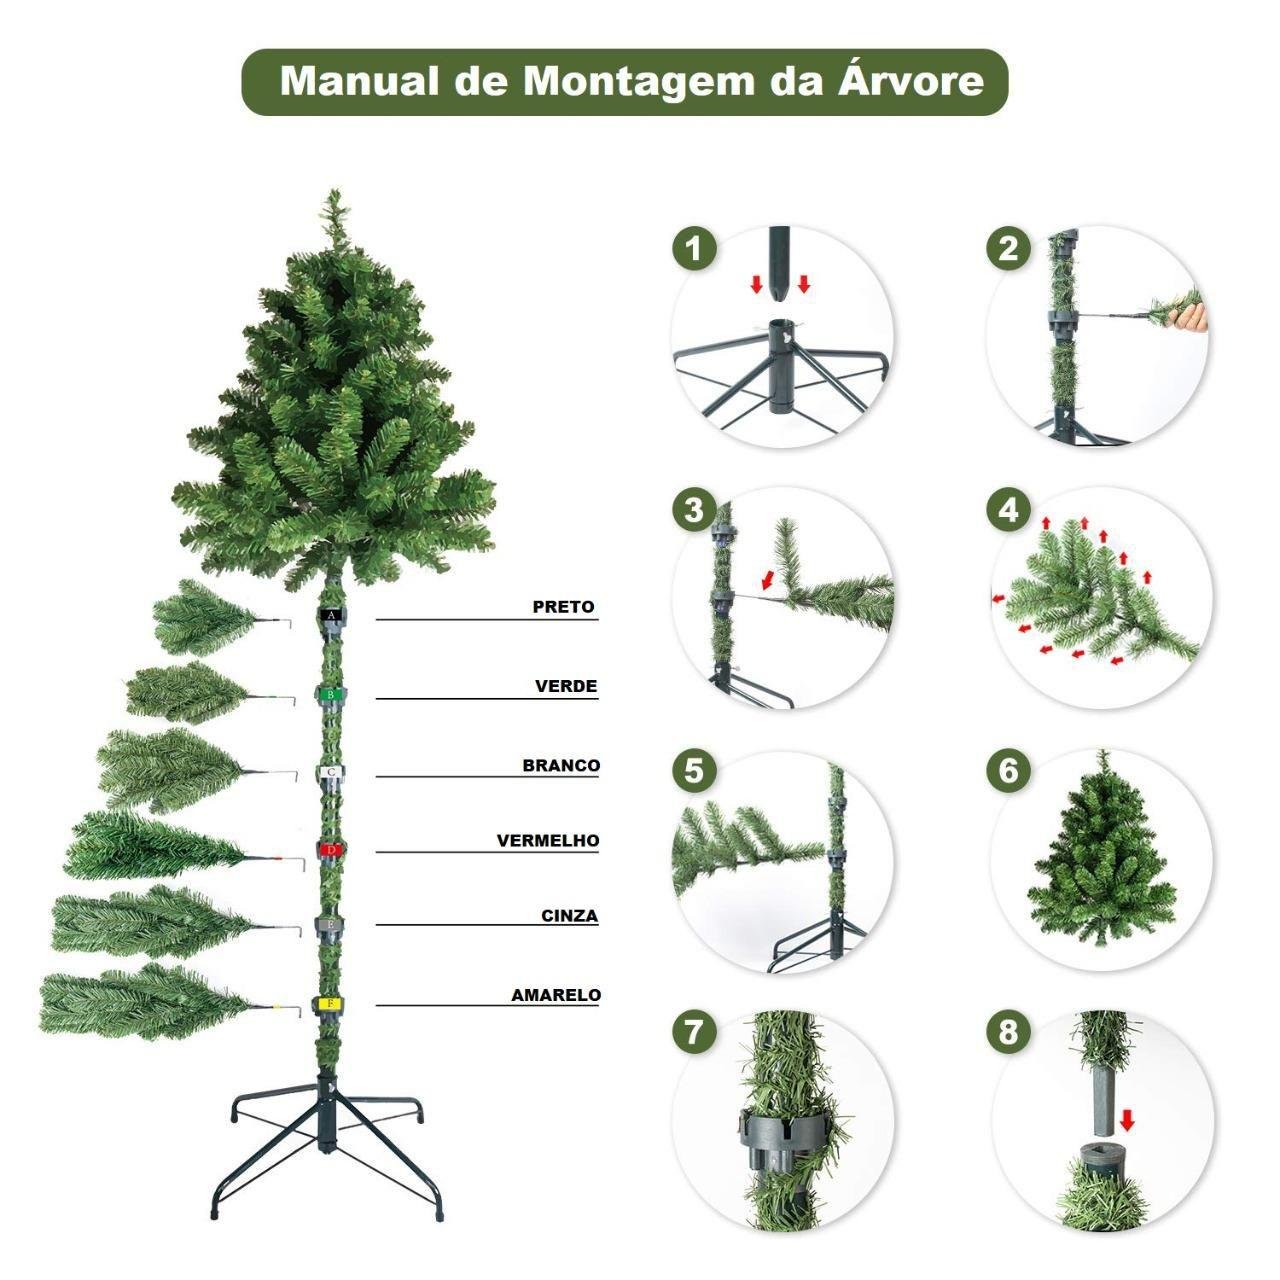 Árvore De Natal Pinheiro Neve Luxo 2,10m 566 Galhos A0321n